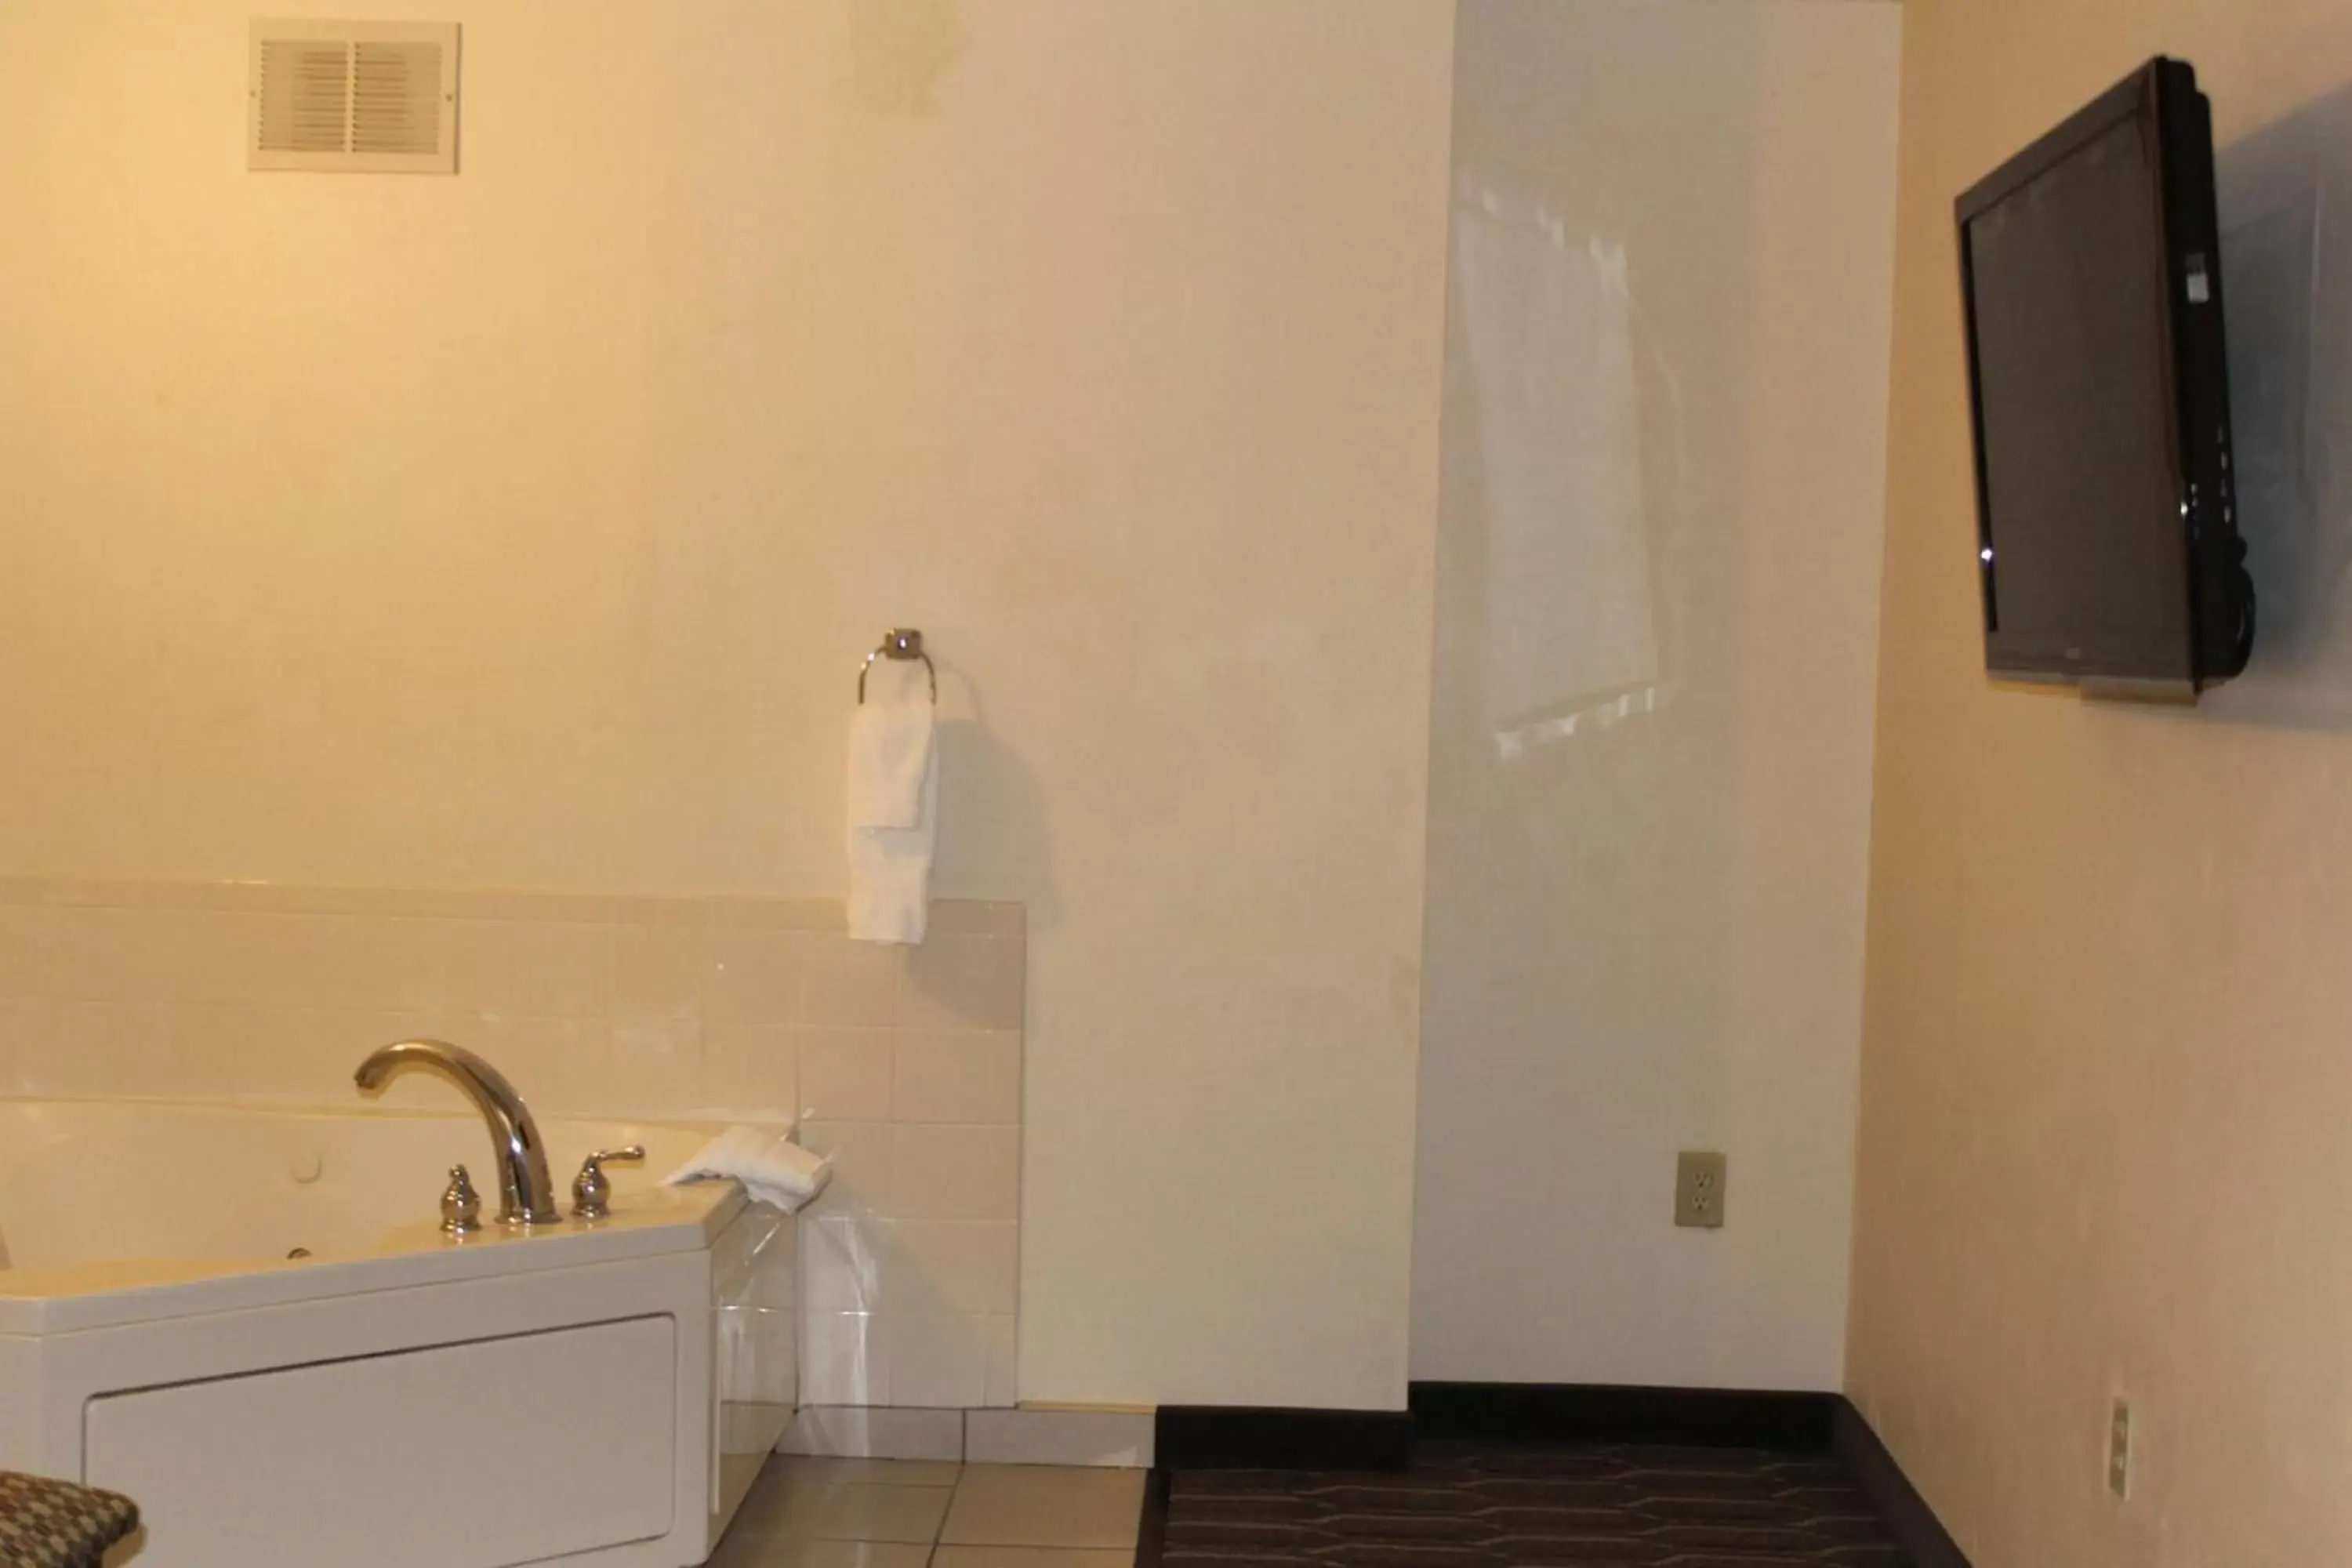 Photo of the whole room, Bathroom in Best Western Plus Yadkin Valley Inn & Suites